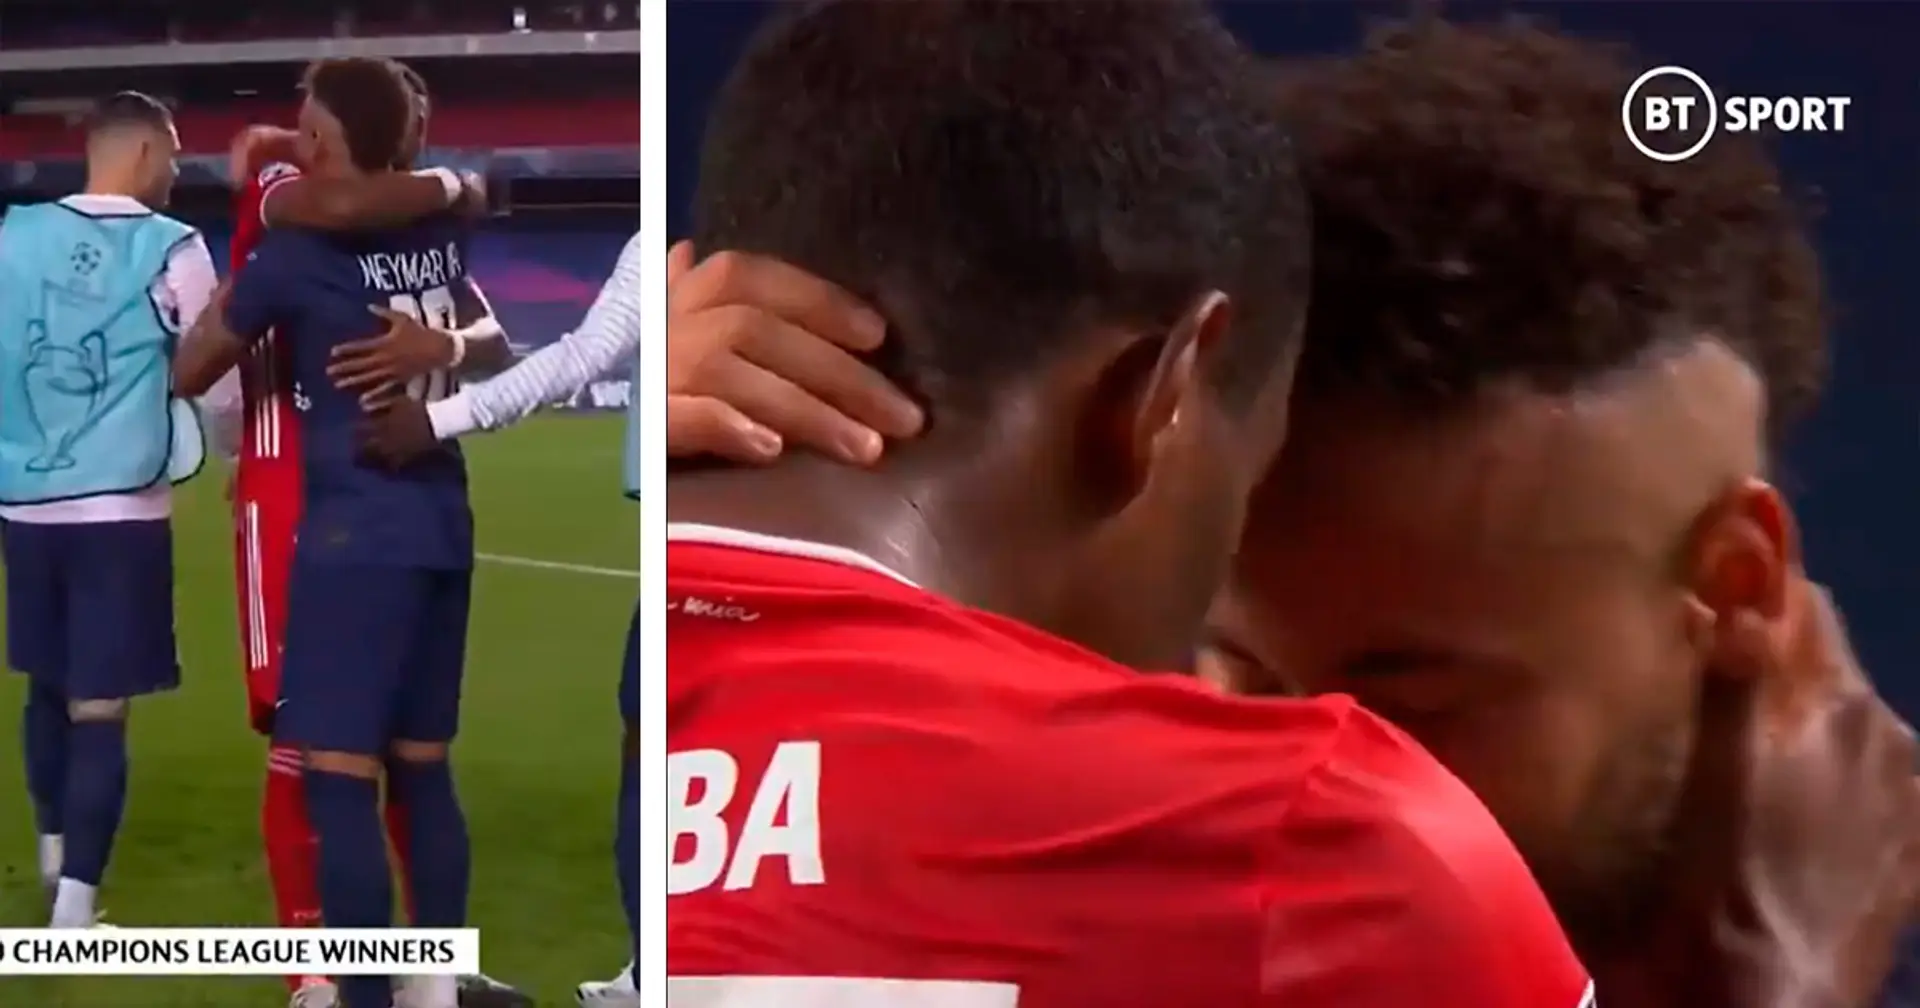 🤗 Tolle Geste von Alaba, der im Moment des großen Triumphes an den trauernden Gegner Neymar denkt